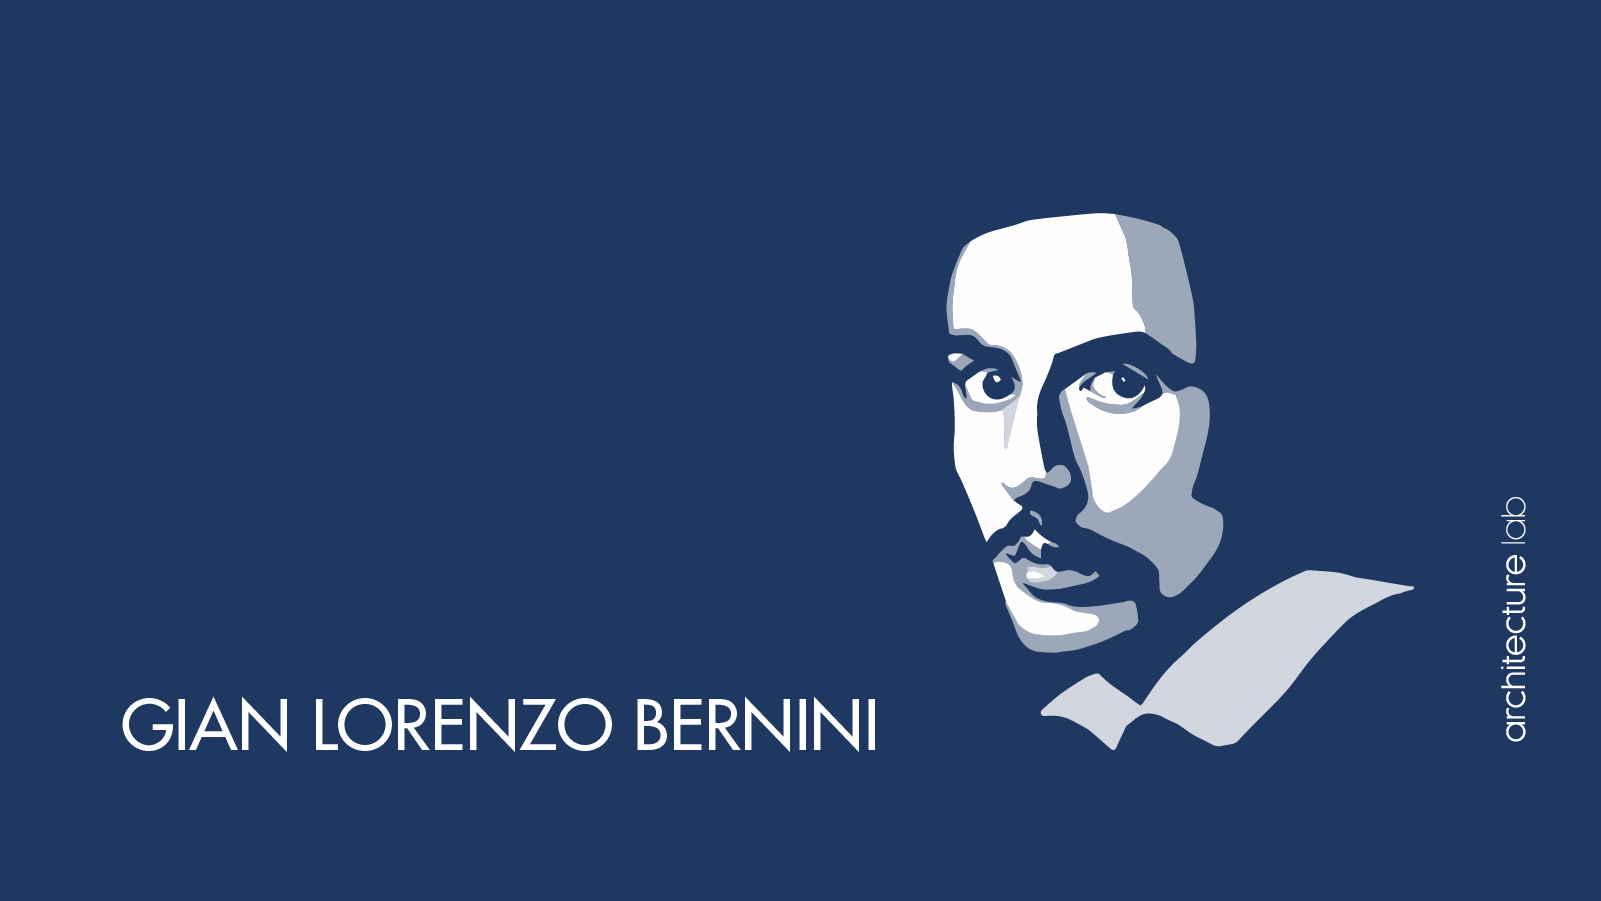 5. Gian lorenzo bernini